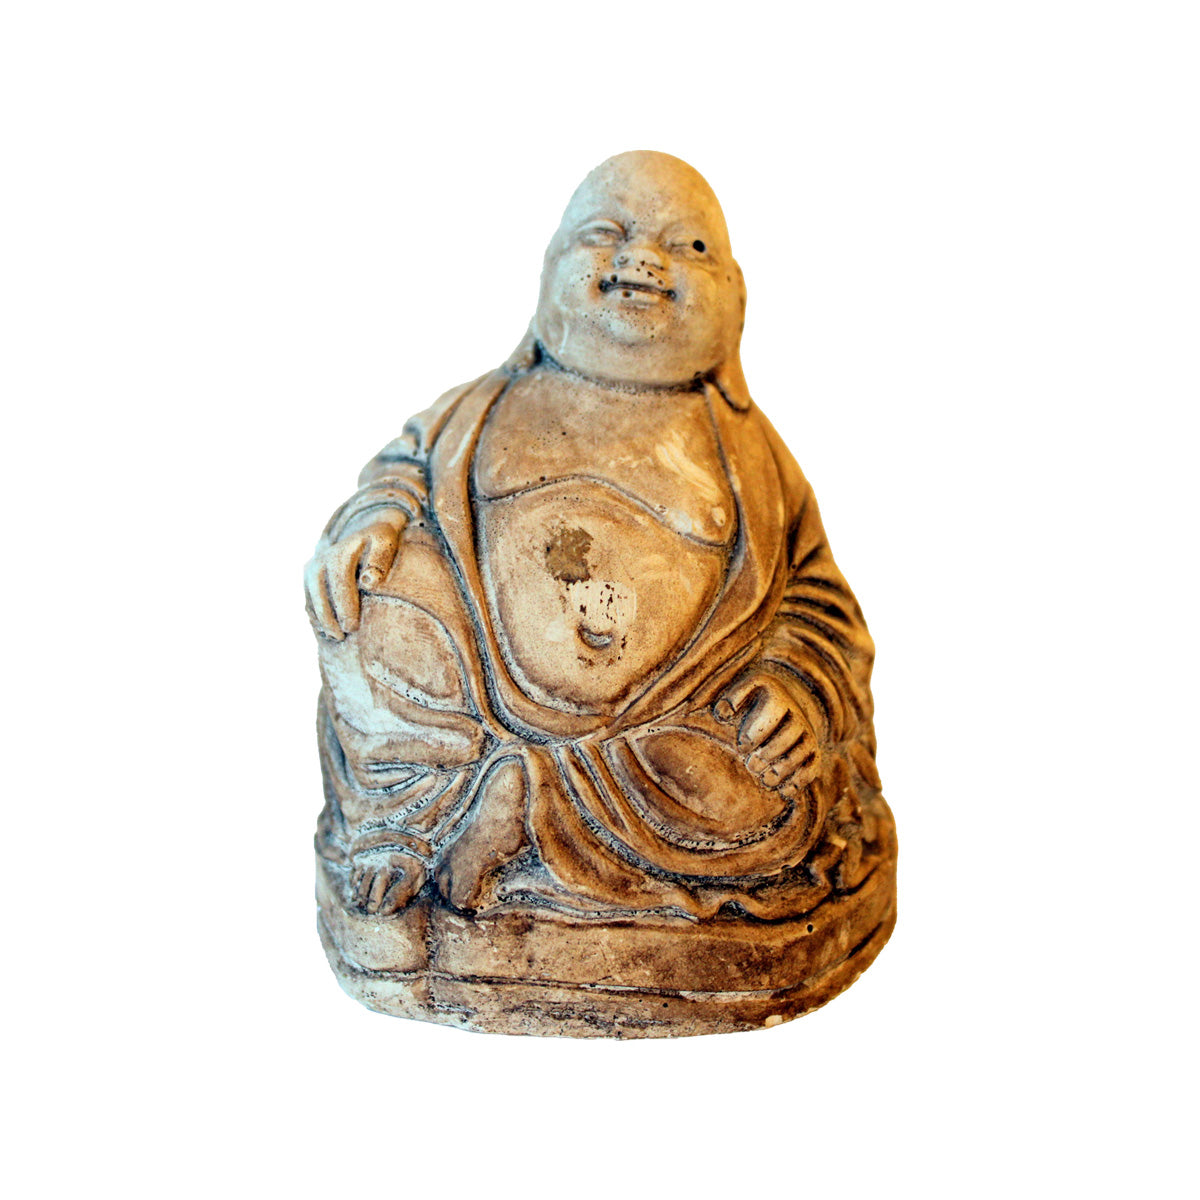 Kompakt buddha figur af støbt gips eller gesso